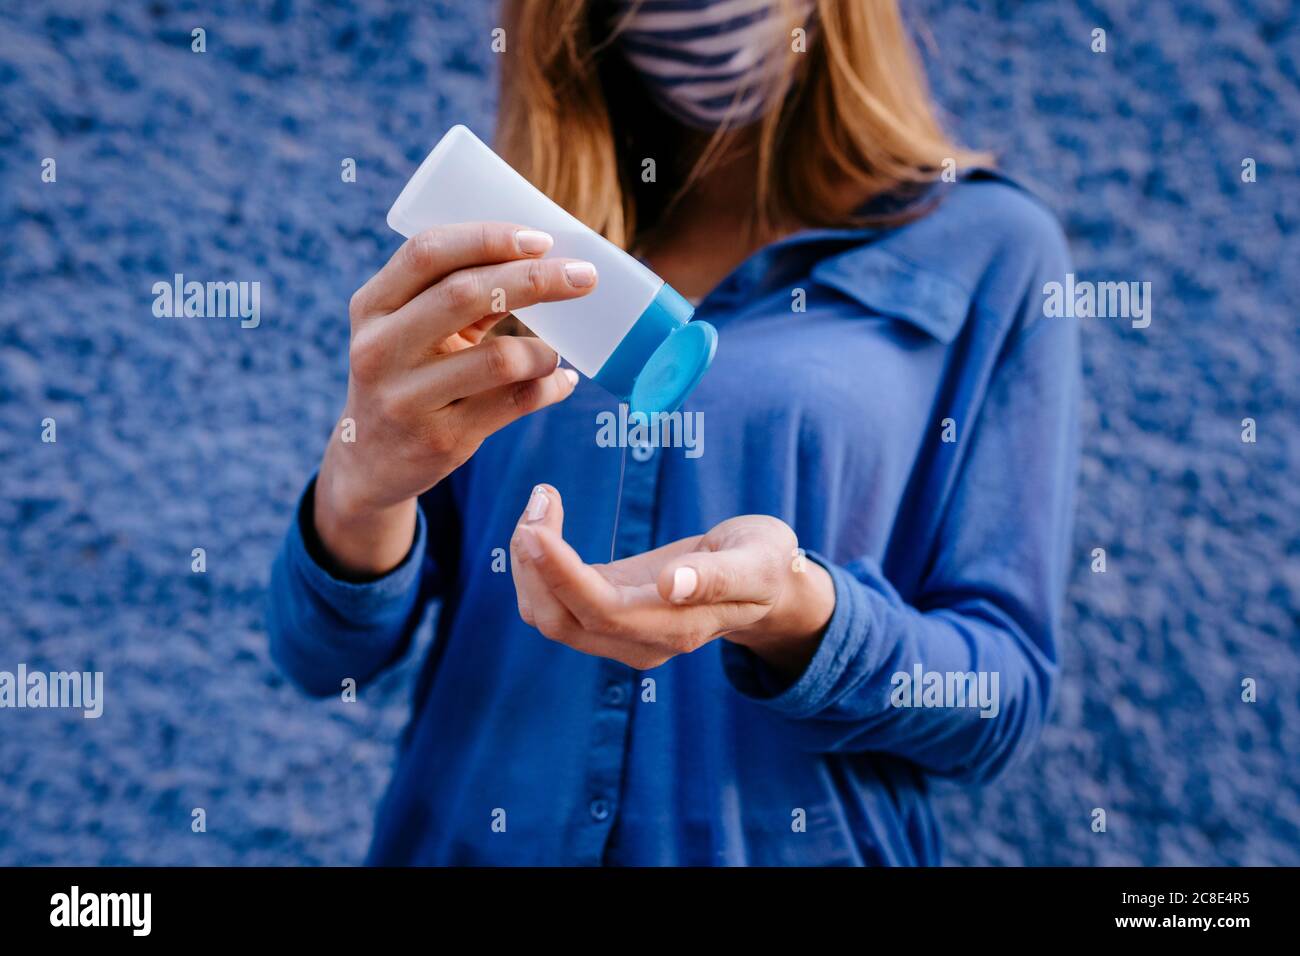 Gros plan d'une jeune femme se lavant les mains avec un désinfectant contre du bleu mur en ville Banque D'Images